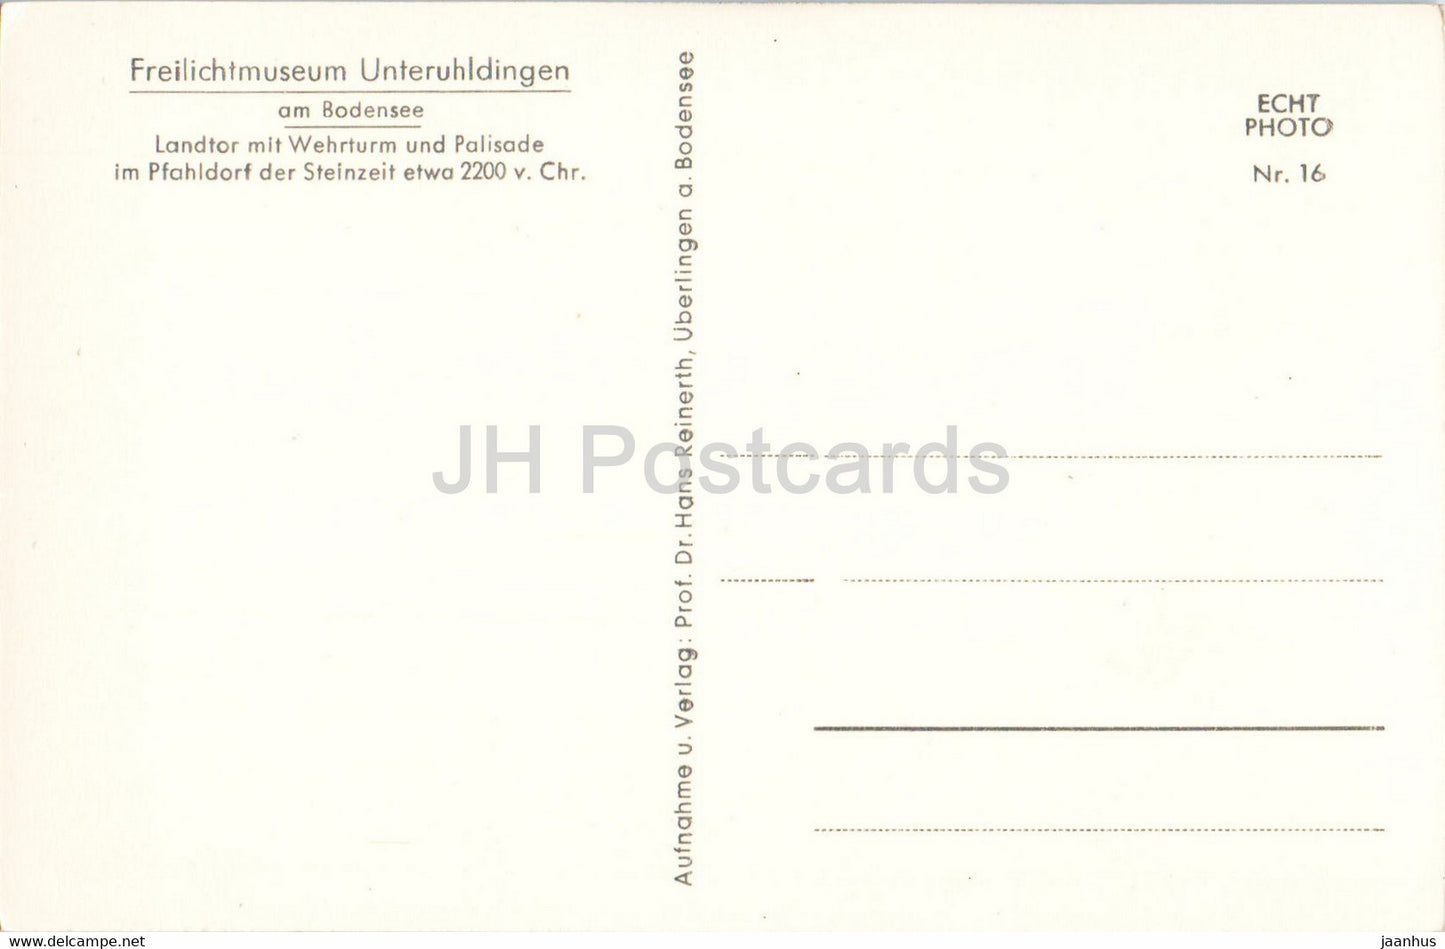 Freilichtmuseum Unteruhldingen am Bodensee - Landtor mit Wehrturm - Antike Welt - alte Postkarte - Deutschland - unbenutzt